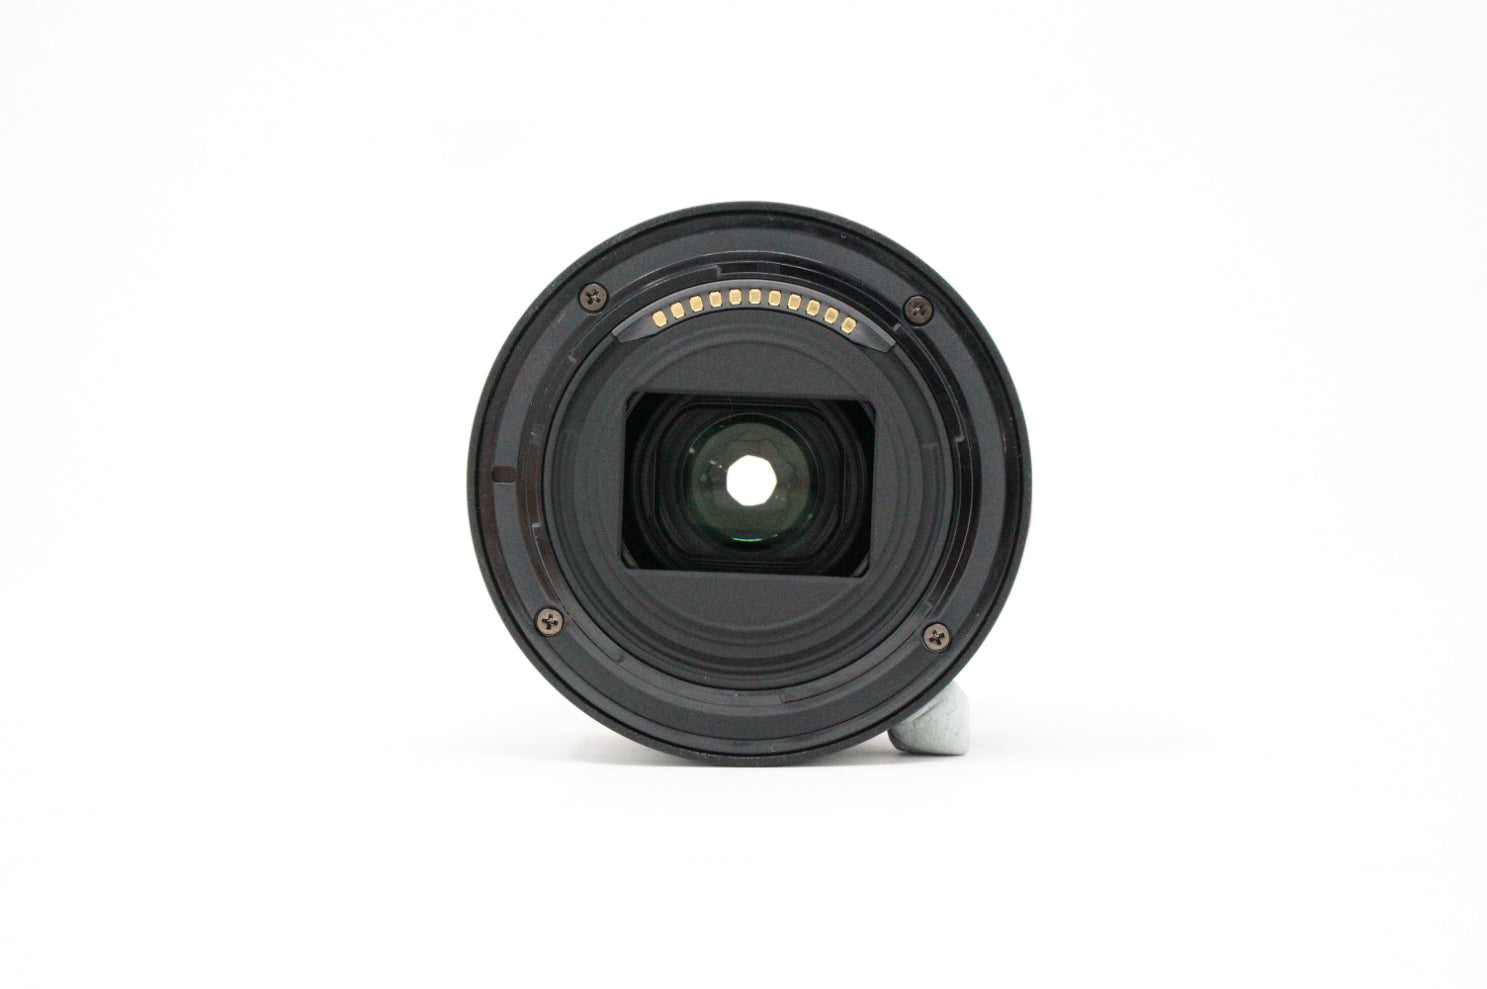 Used Nikon Z Nikkor 28mm F2.8 Prime lens